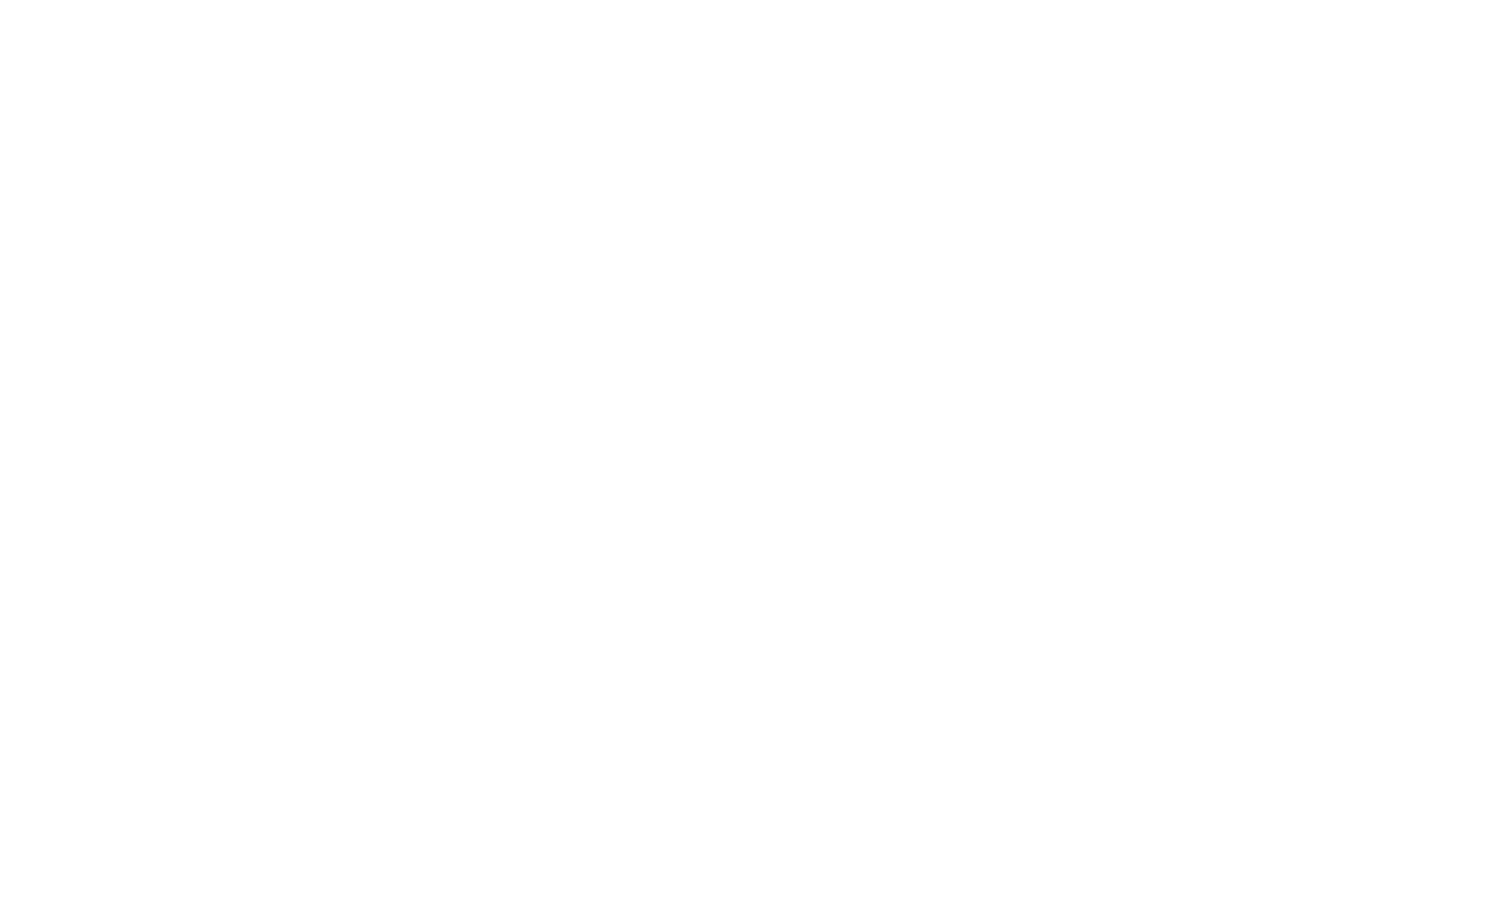 Guide restaurant halal